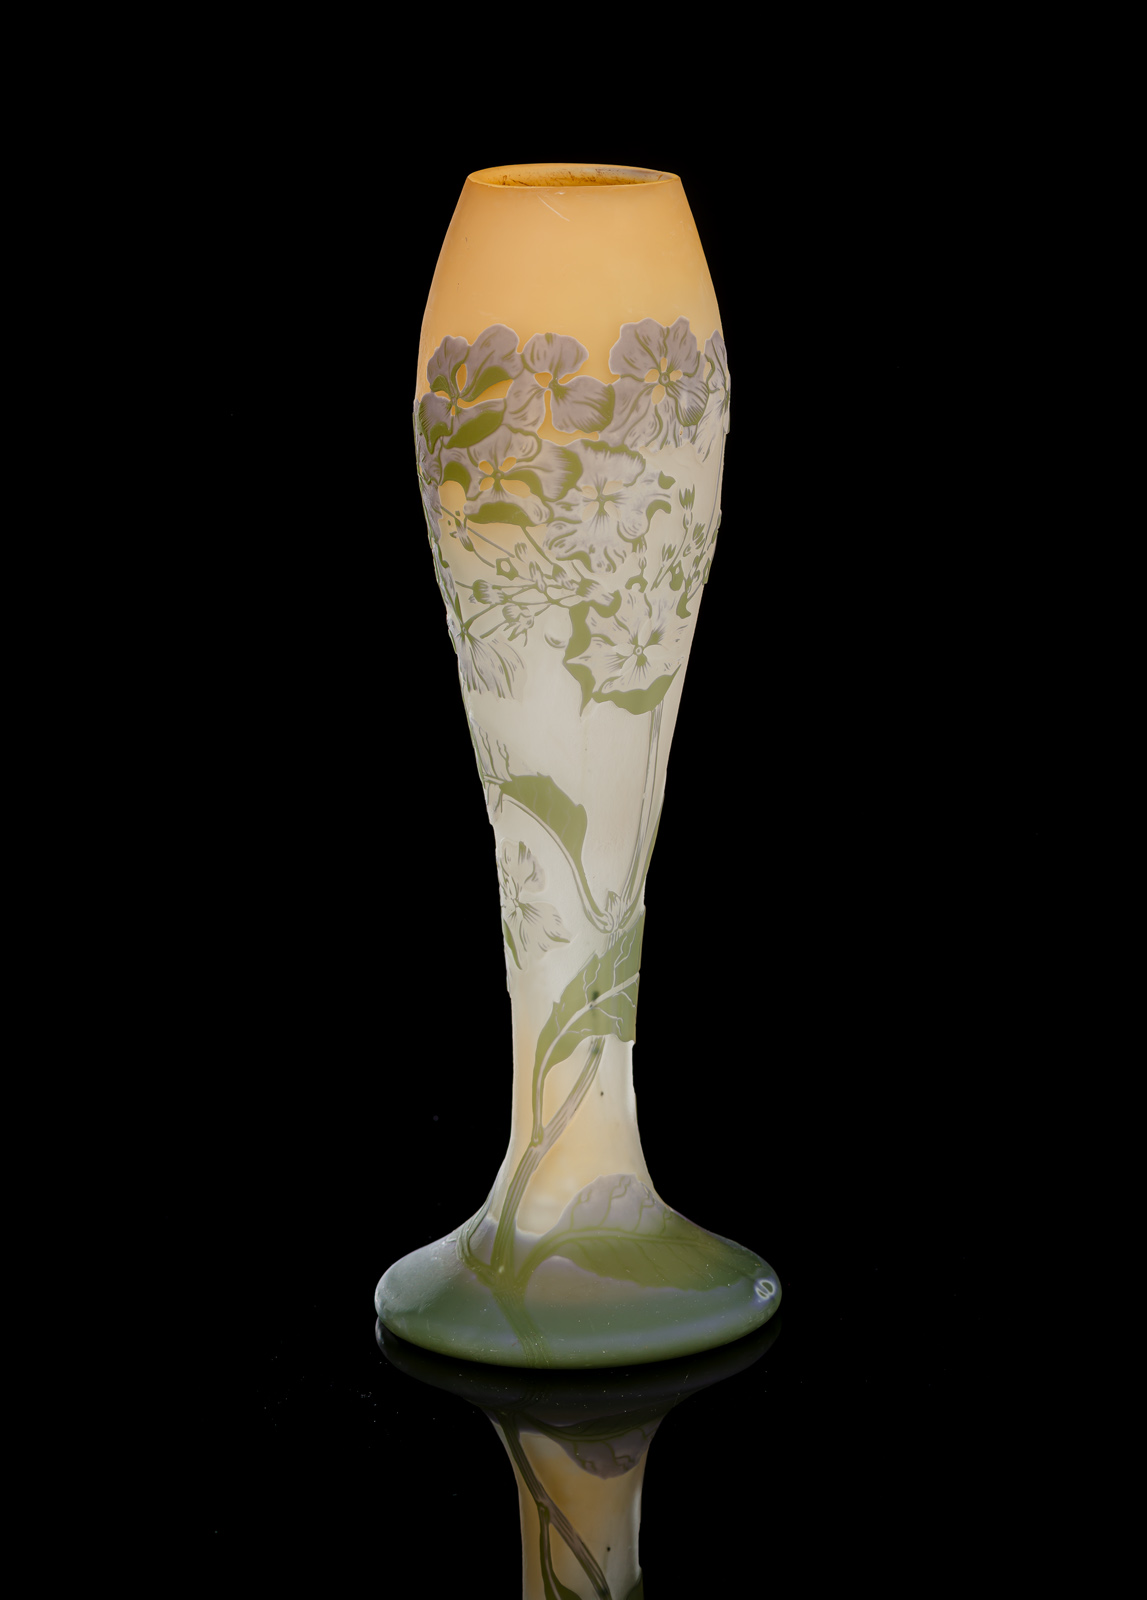 Farbloses Vase mit Überfang in Weiß, Violett und Grün. Partiell lachsfarben unterfangen. Geätzter Dekor von Hortensien. Am Stand hochgeätzte Signatur 